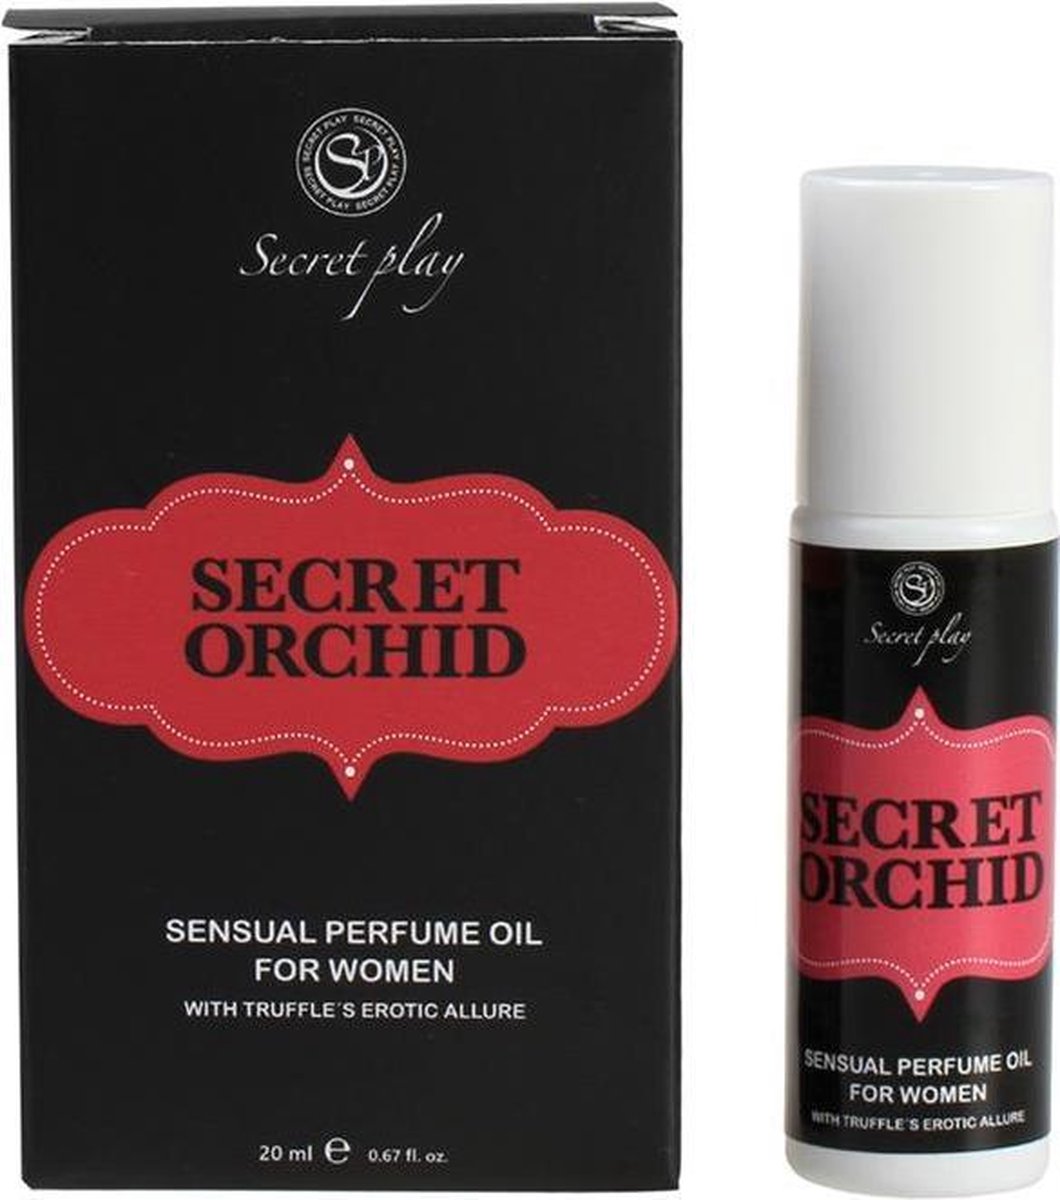 Secret Play - Secret Orchid Perfume Oil - Stimulating products Parfume Feromonen 20